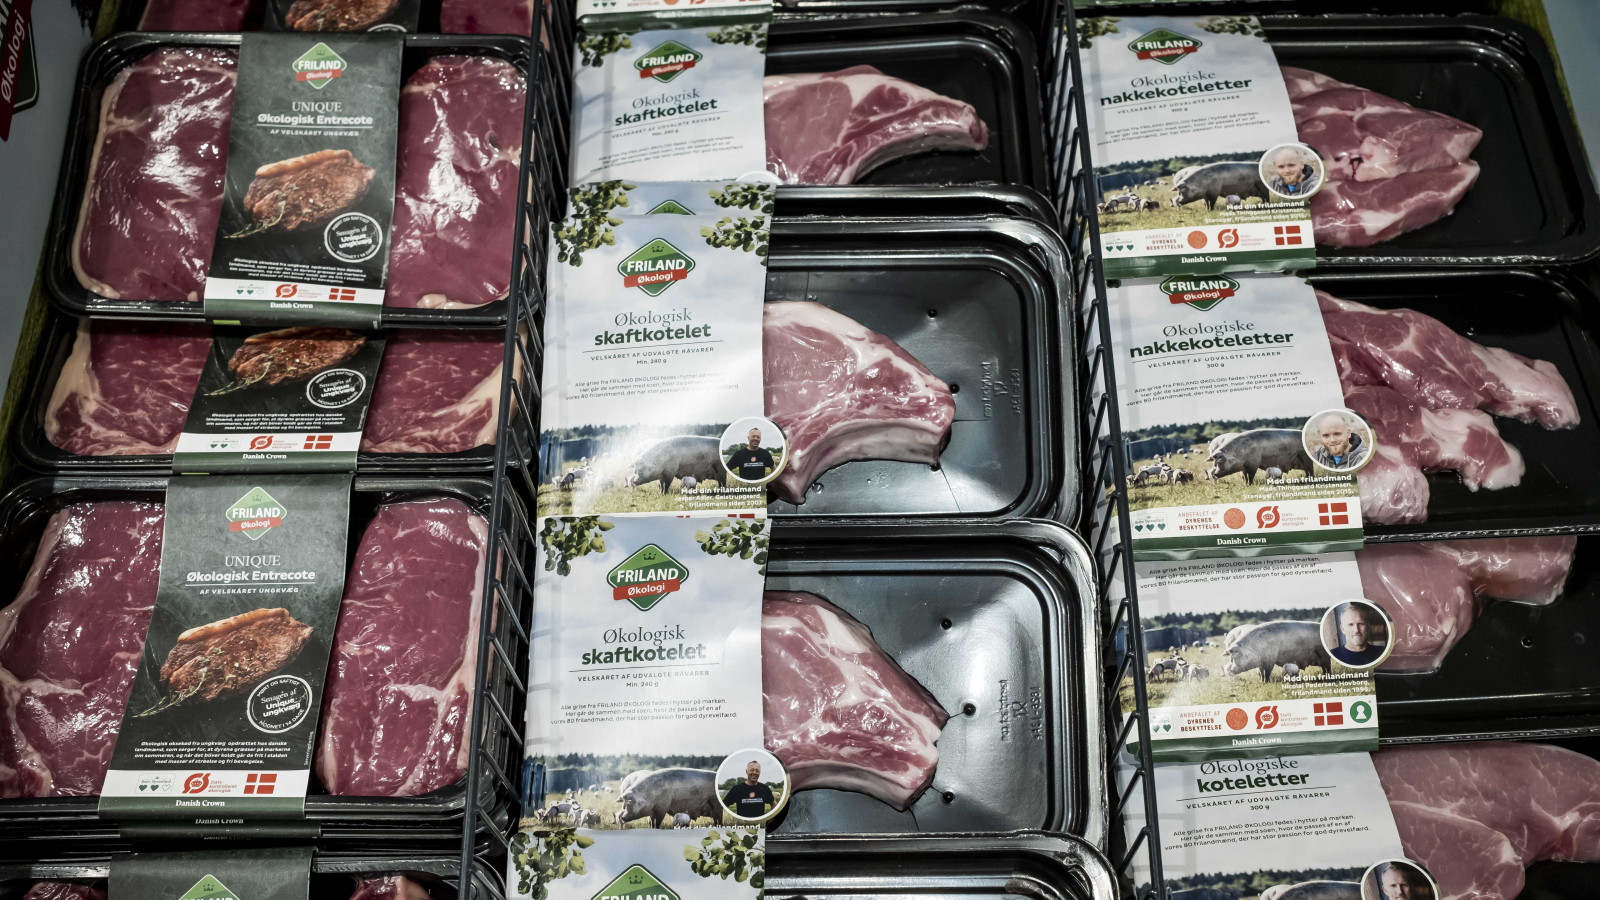 Et kig ned i køledisken hos Meny i Norhavnen i København afslører et stort udvalg af økologisk kød